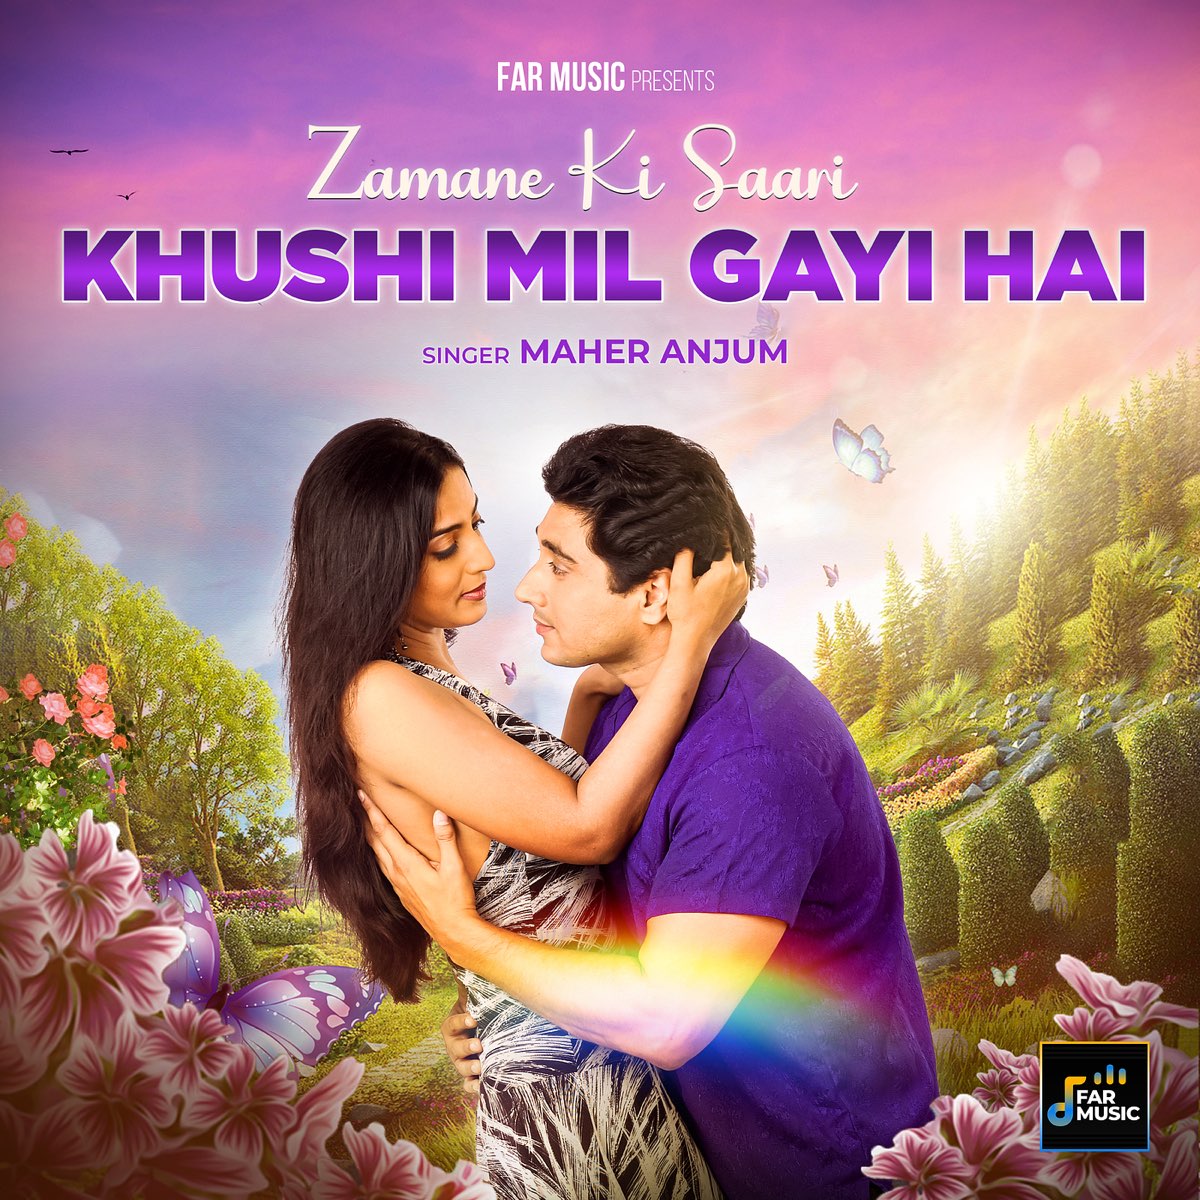 Jamane ki sari khushi mil gayi hai song download